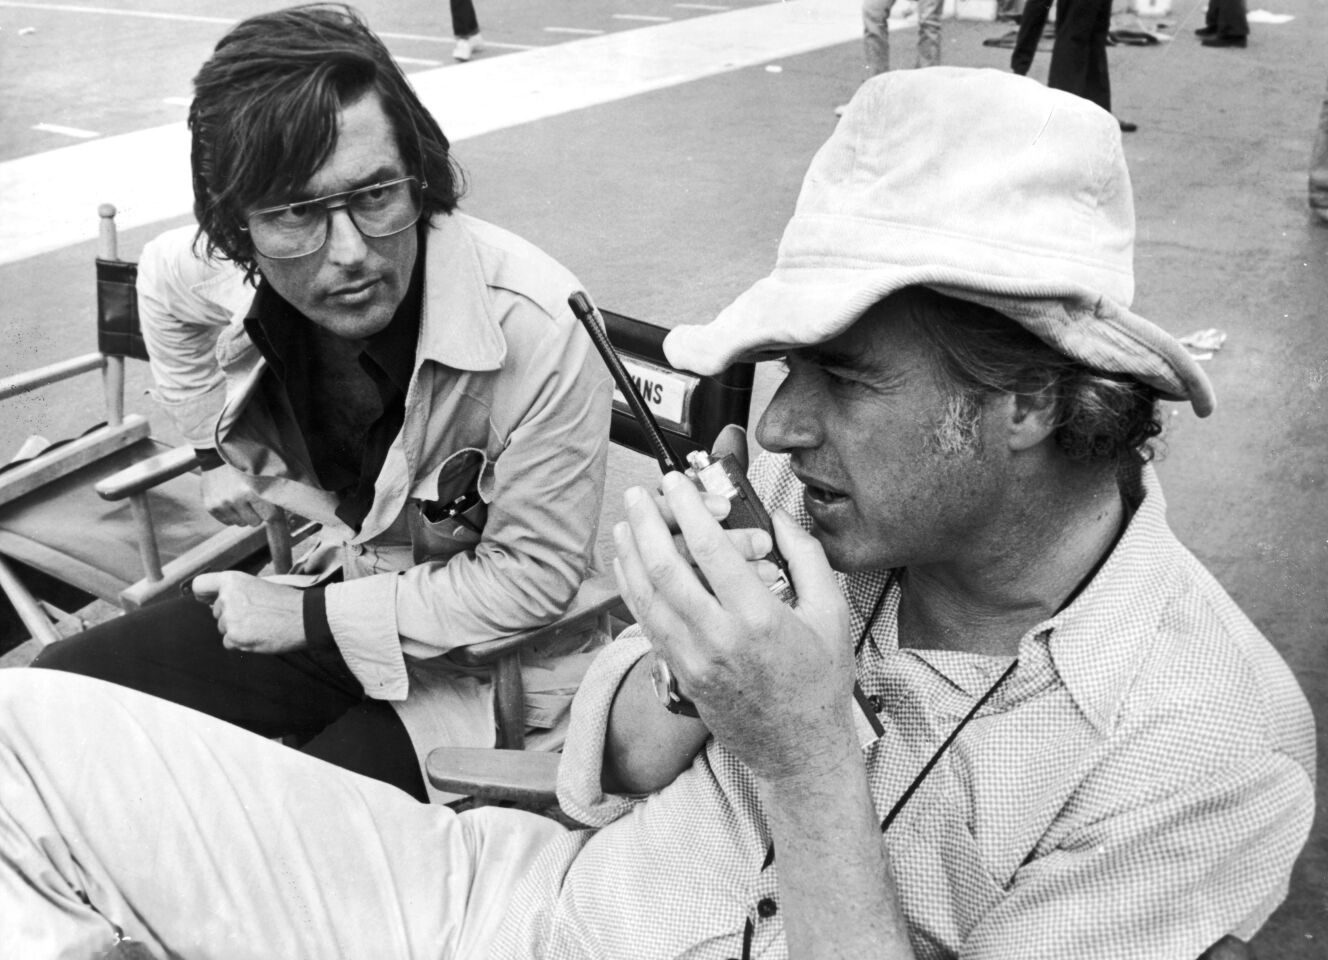 Robert Evans, left, works with director John Frankenheimer on the set of the film "Black Sunday" in 1976.